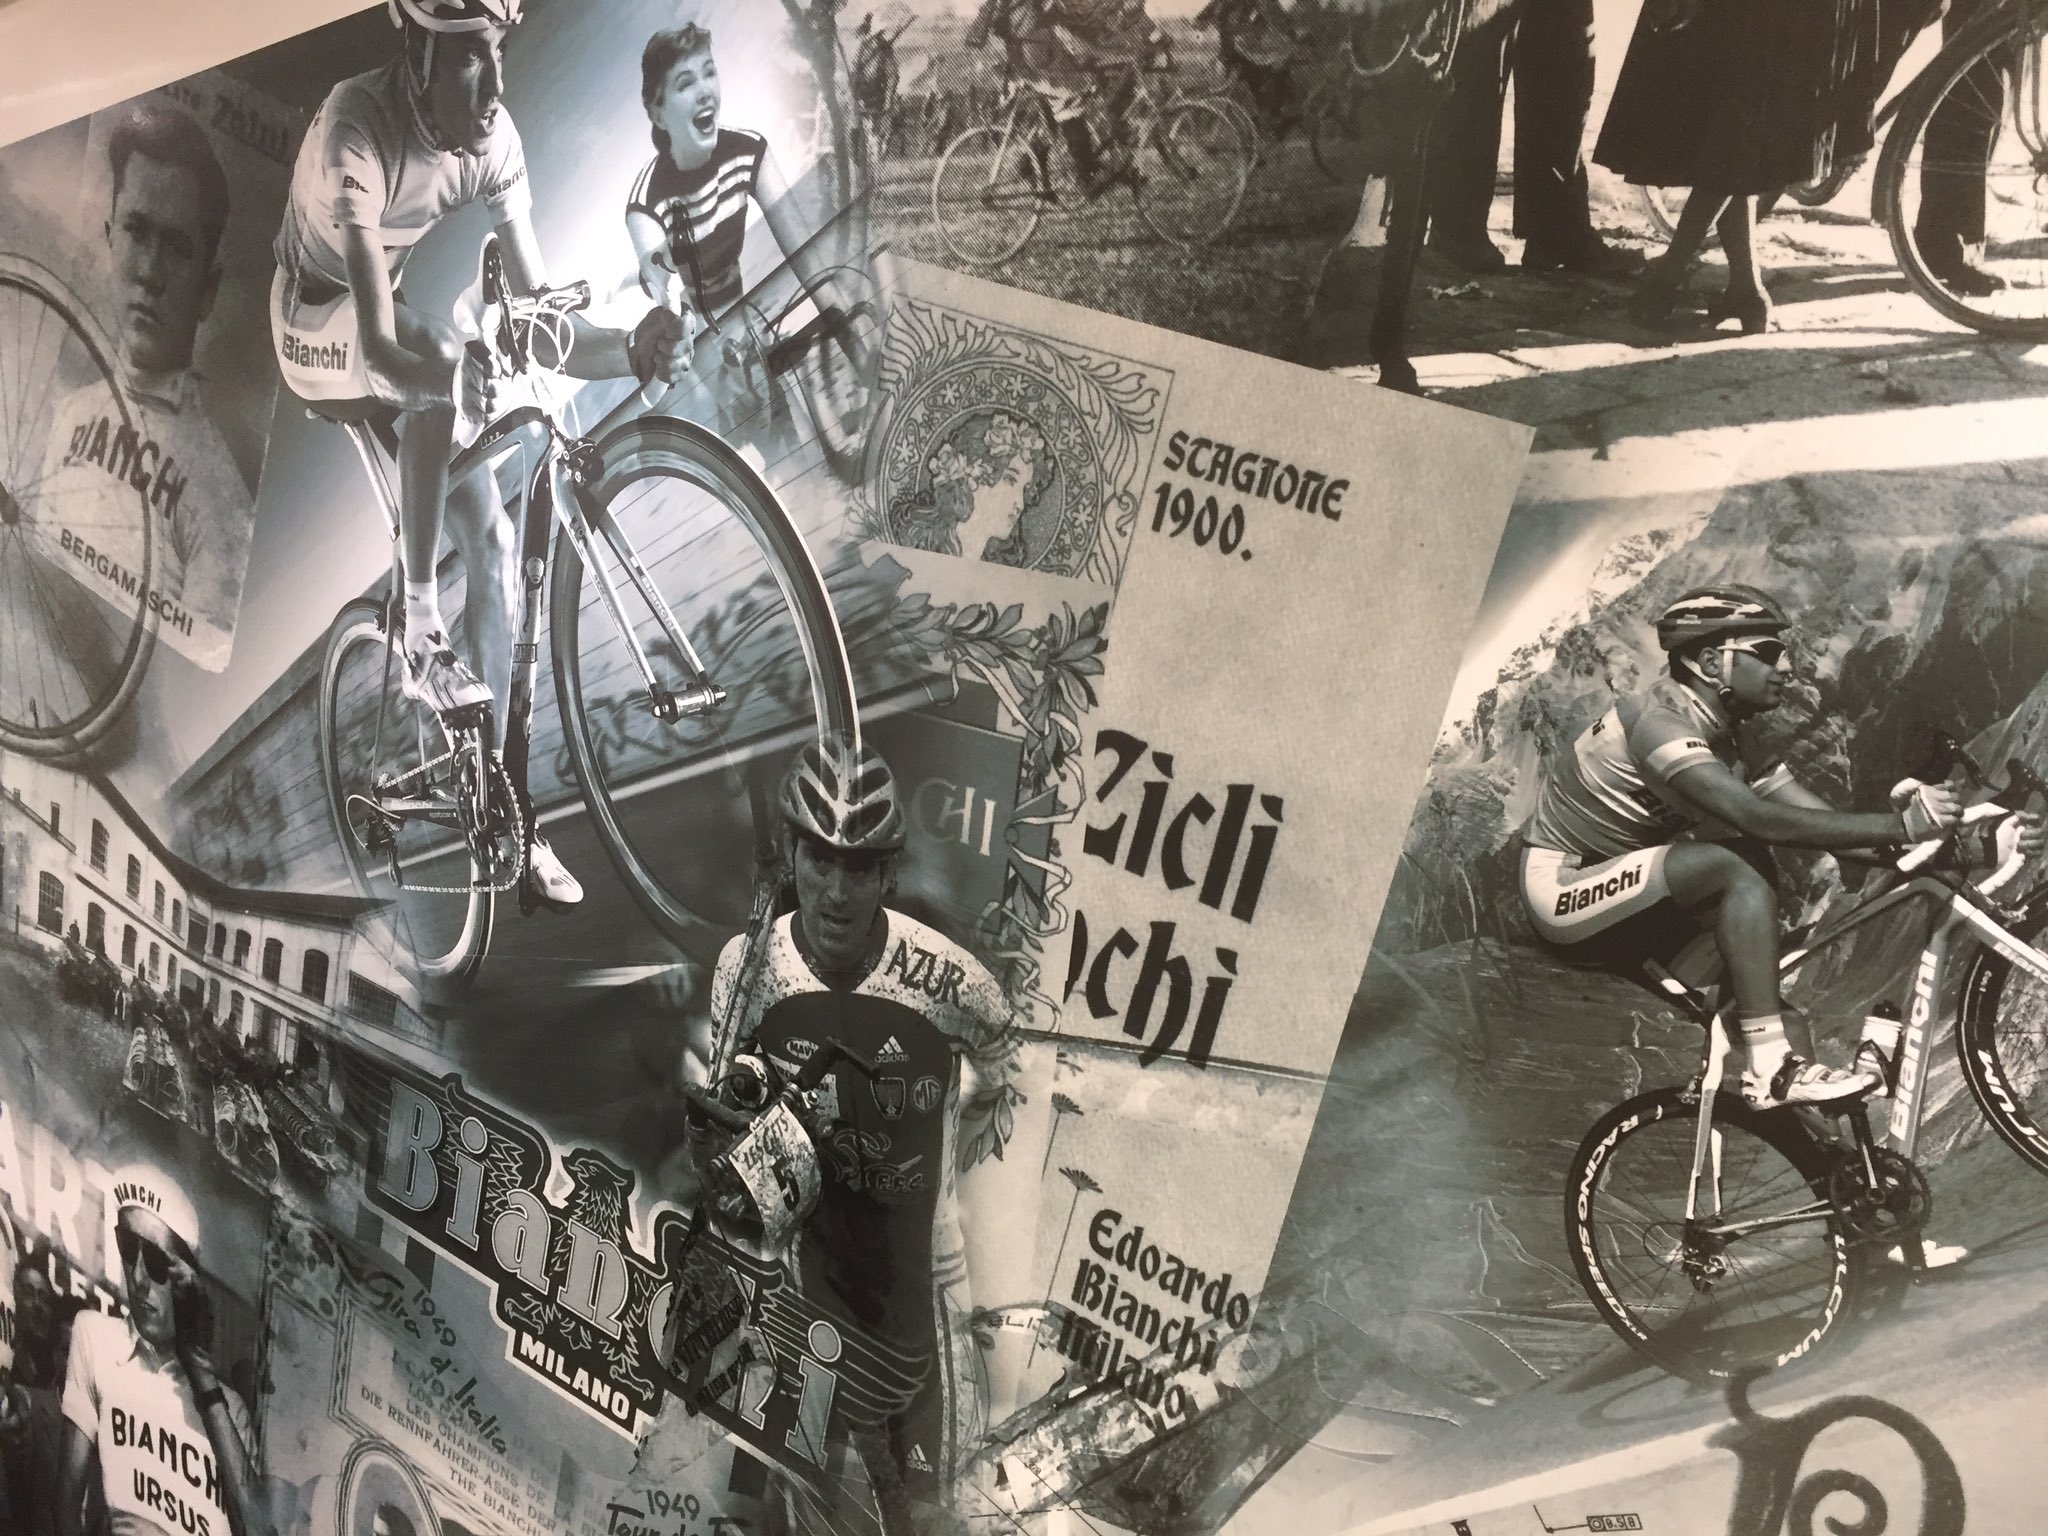 Bianchi Bike Store Mejiro 目白店の壁紙いいなーって思う方リツイートお願いします 私個人的にはかなりかっこいいと思います 一見の価値あり Bianch目白 Bianchmejiro